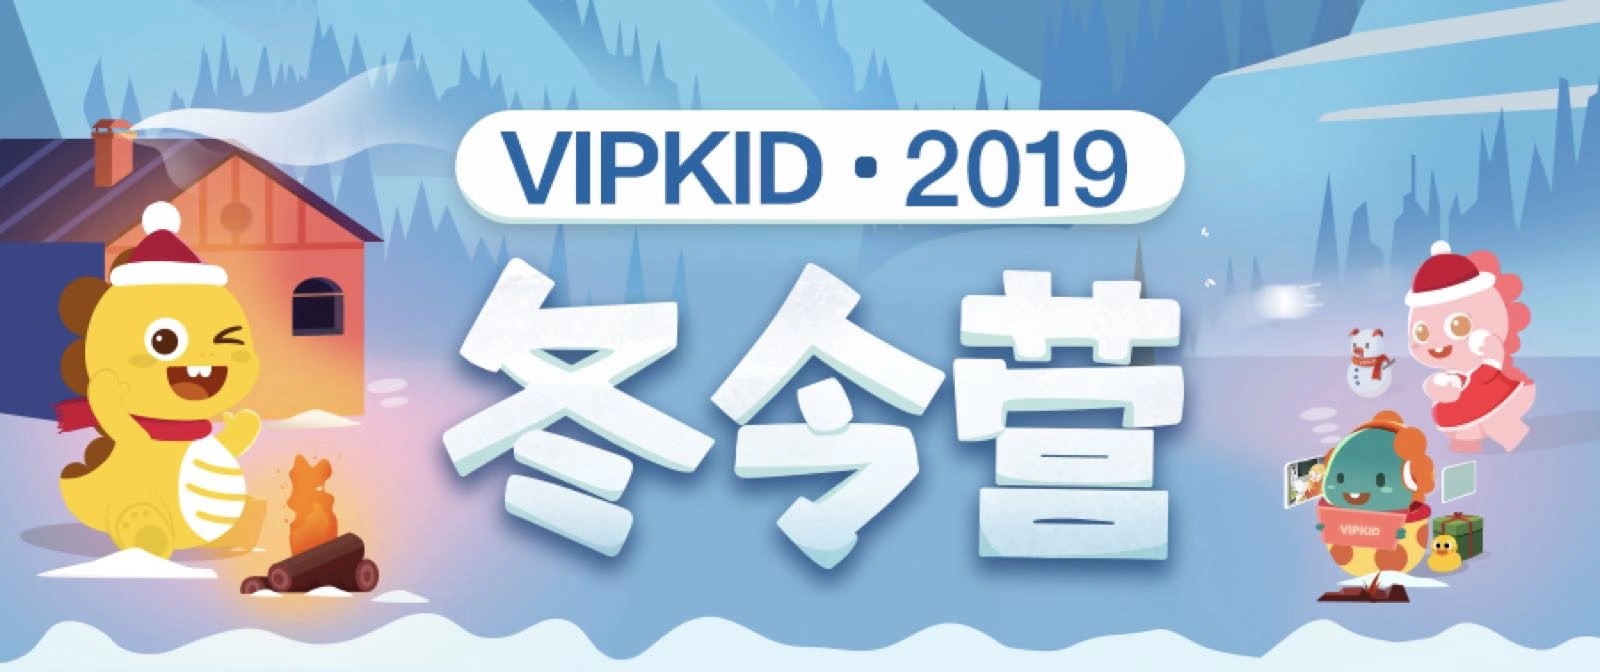 超干货 | VIPKID 2019 冬令营开启通知，赢取丰厚奖学金！